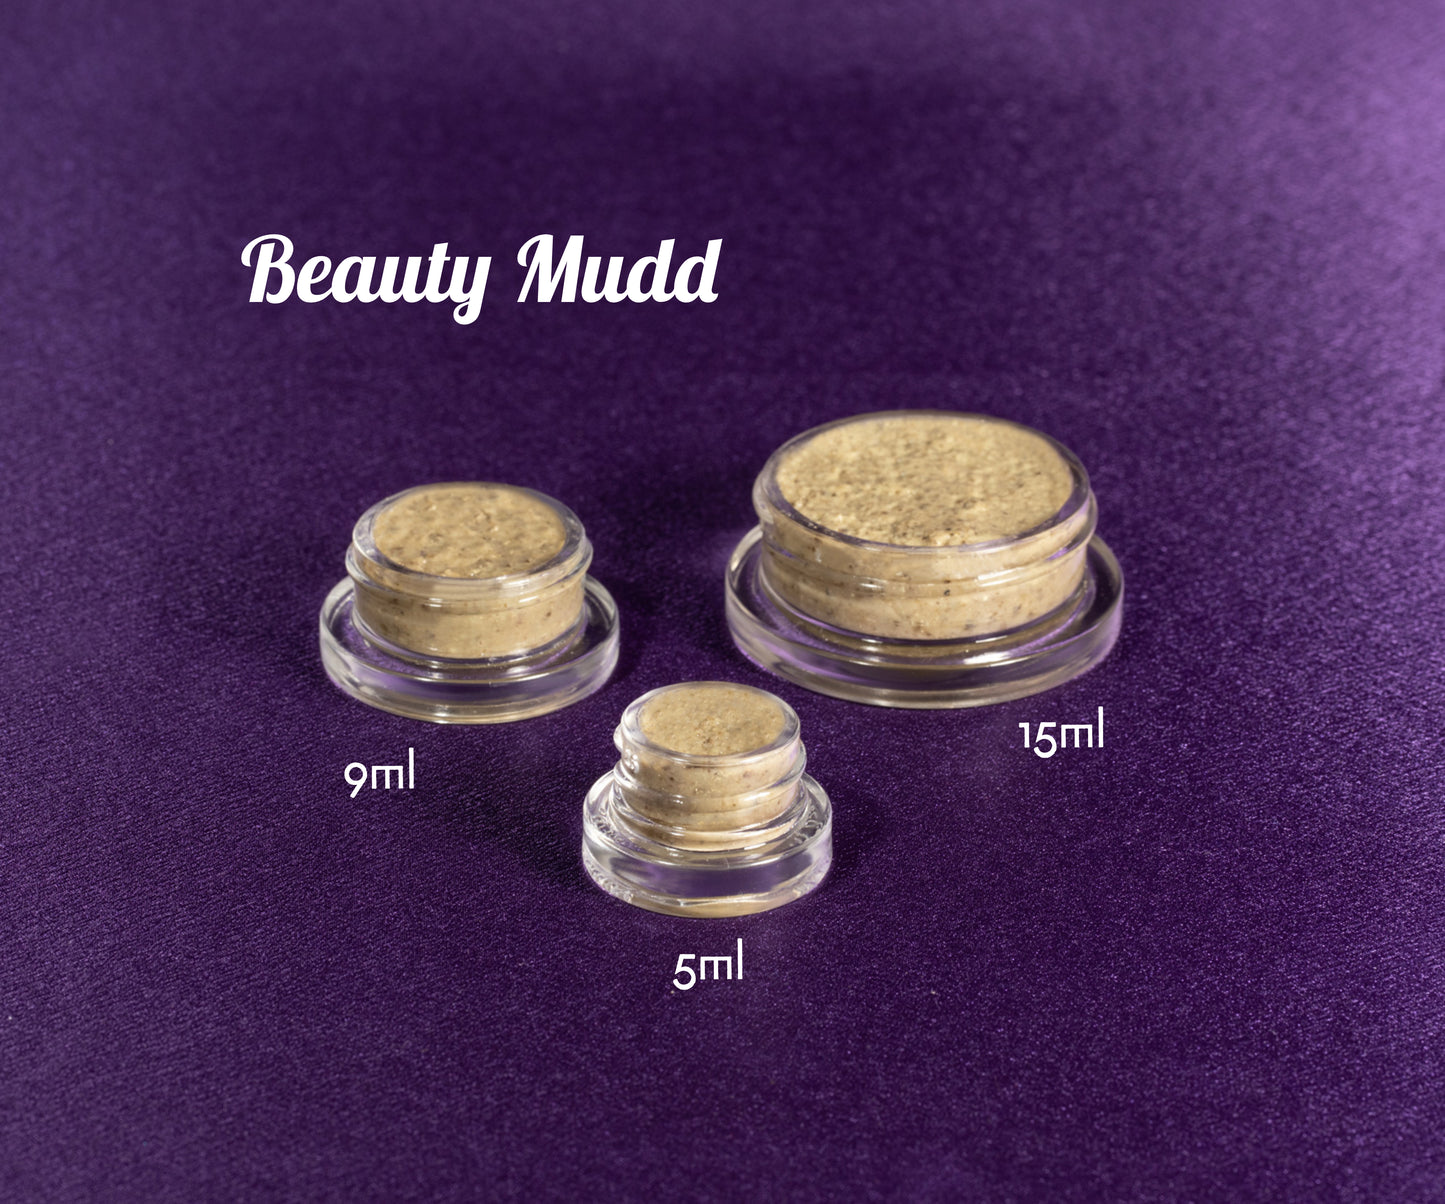 Beauty Mudd